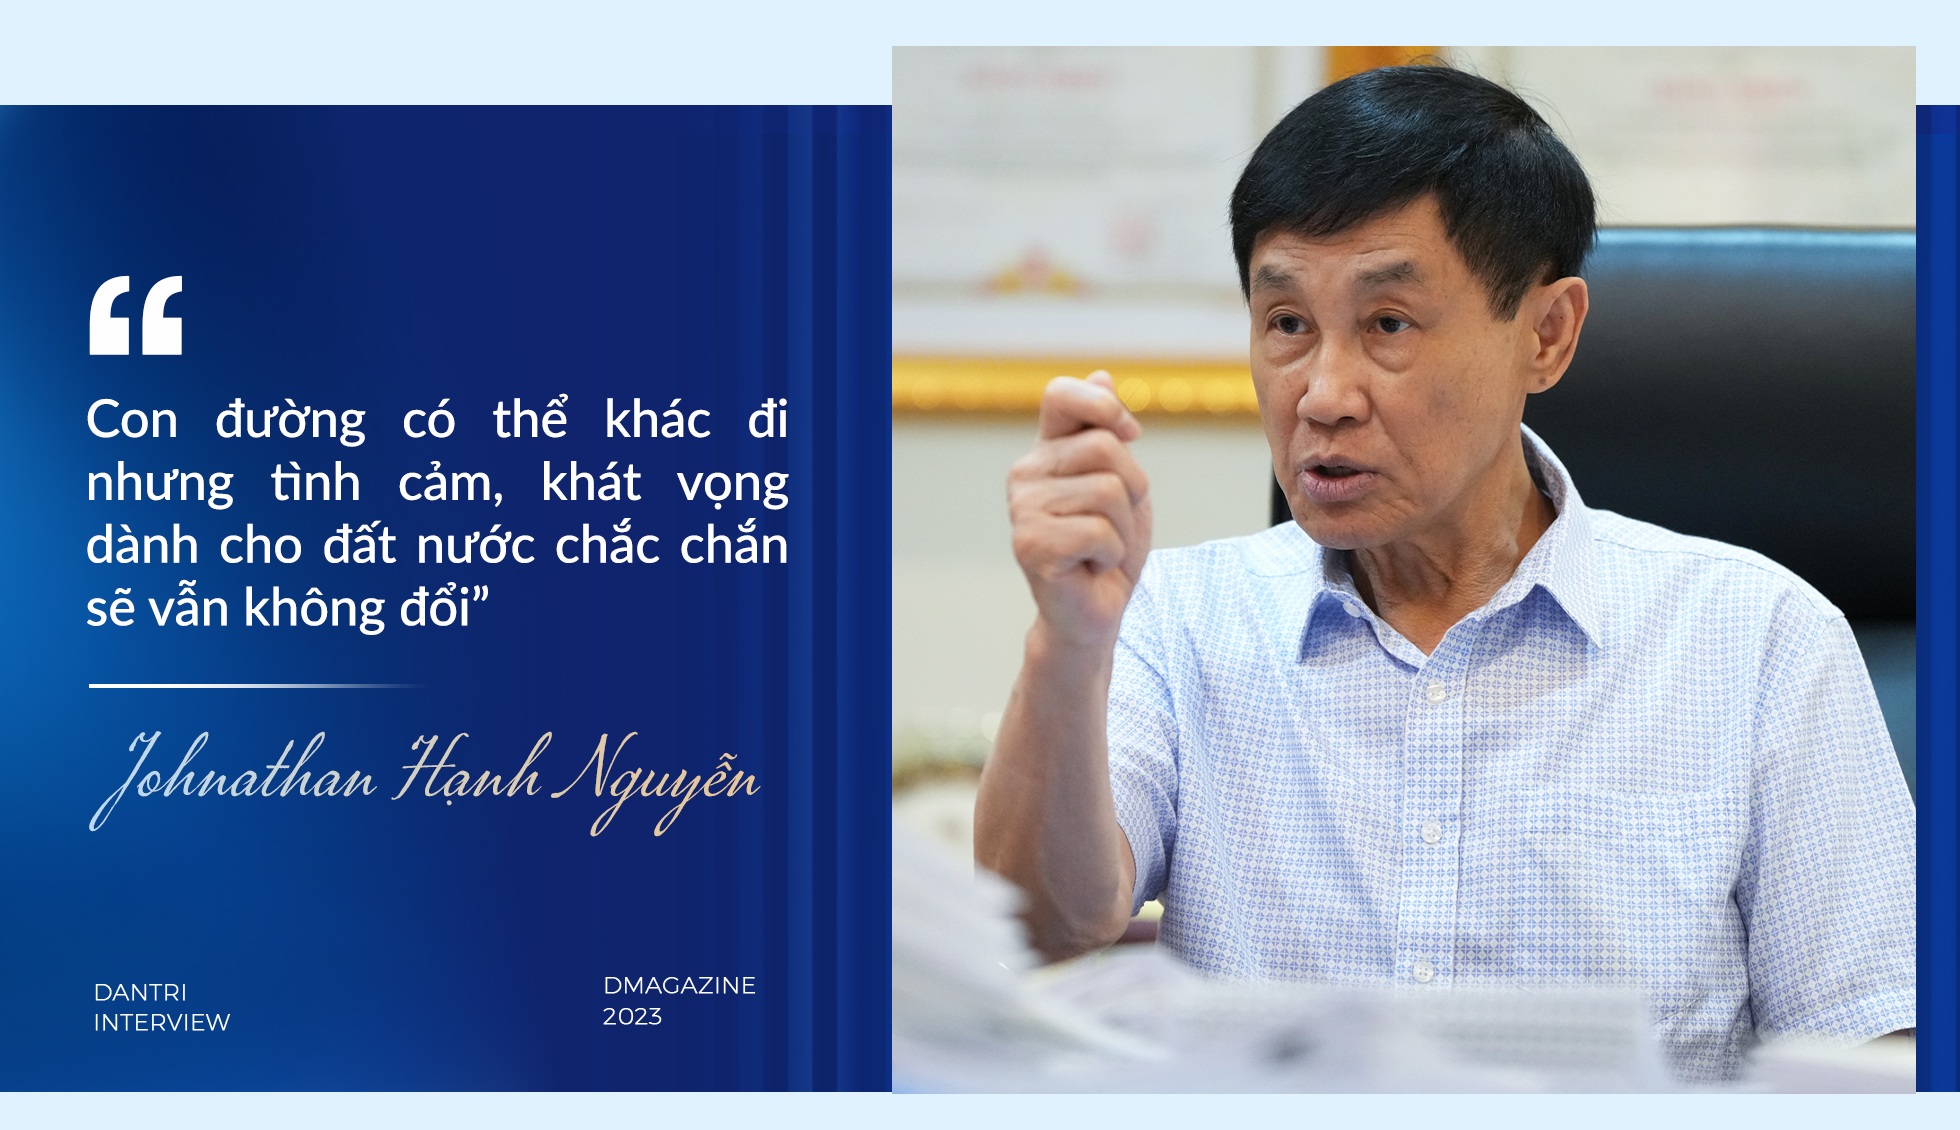 Cuộc gặp với cố Thủ tướng Phạm Văn Đồng thay đổi cuộc đời ông Johnathan Hạnh Nguyễn - 14